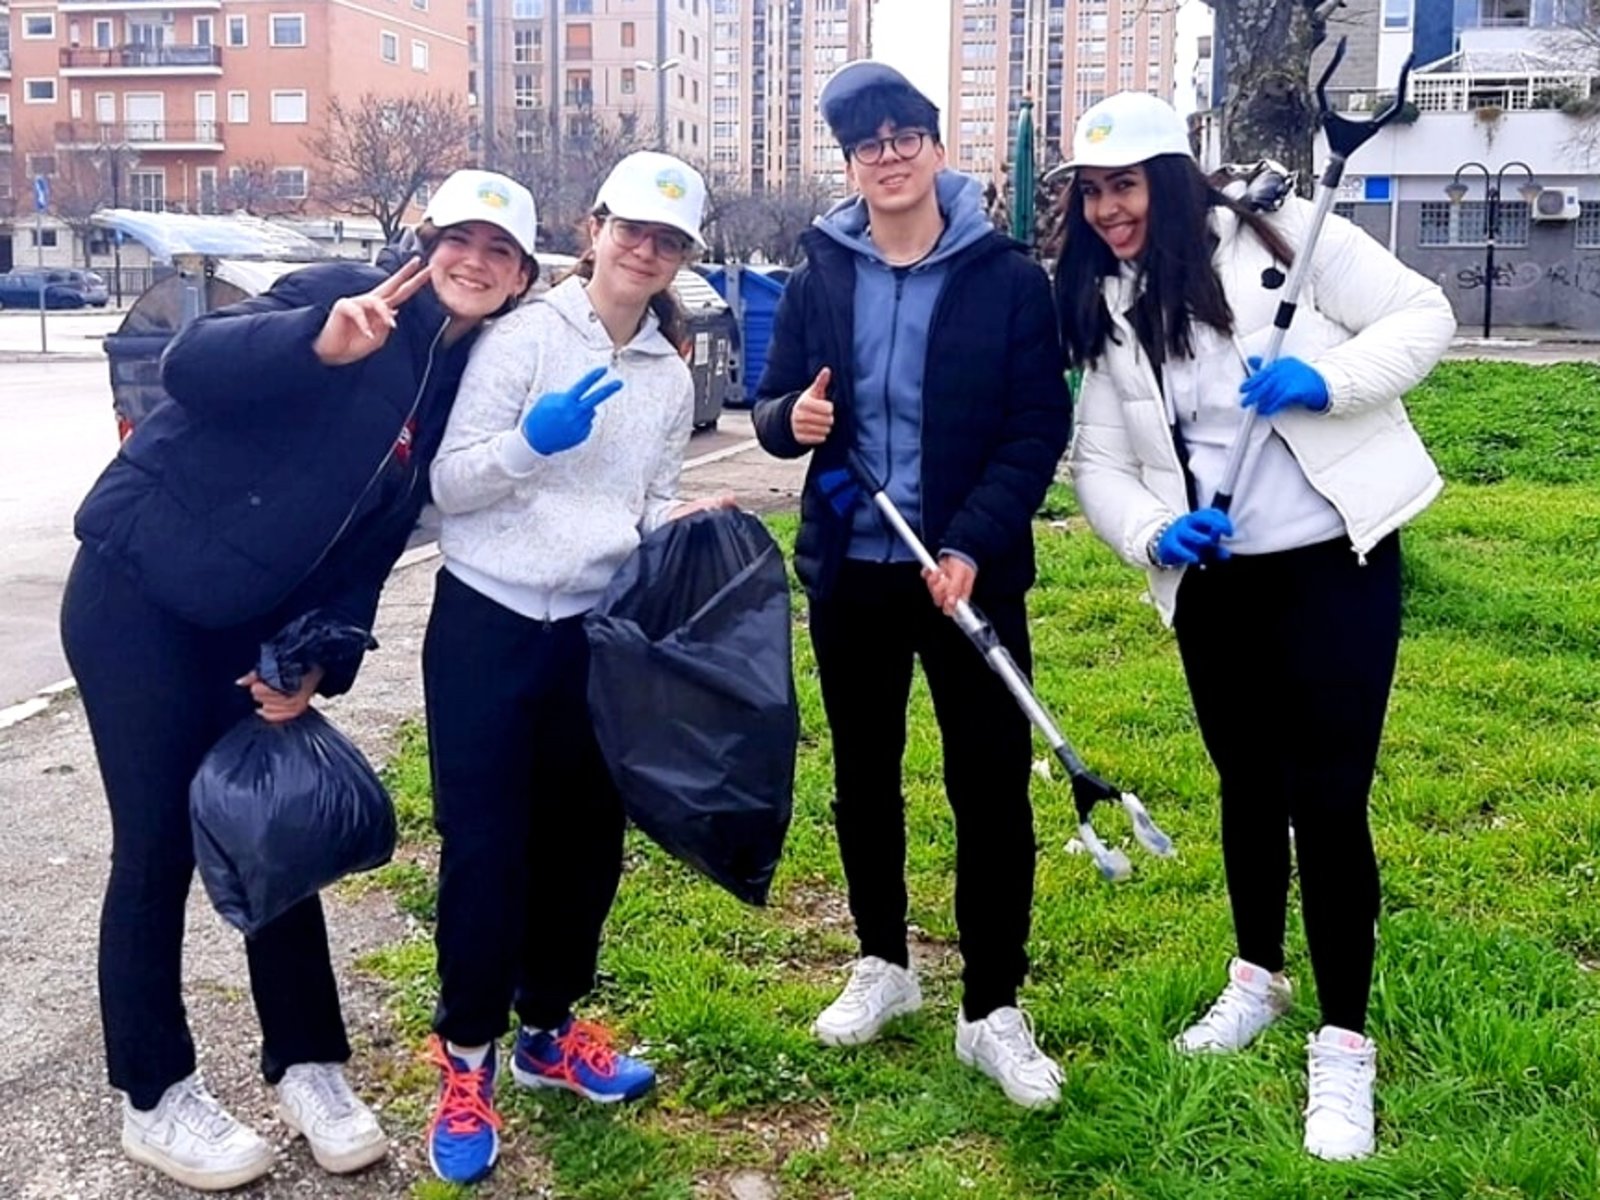 Dobrovolníci z Turínské pobočky nadace Cesta ke štěstí pravidelně uklízí ulice a zeleň svého města